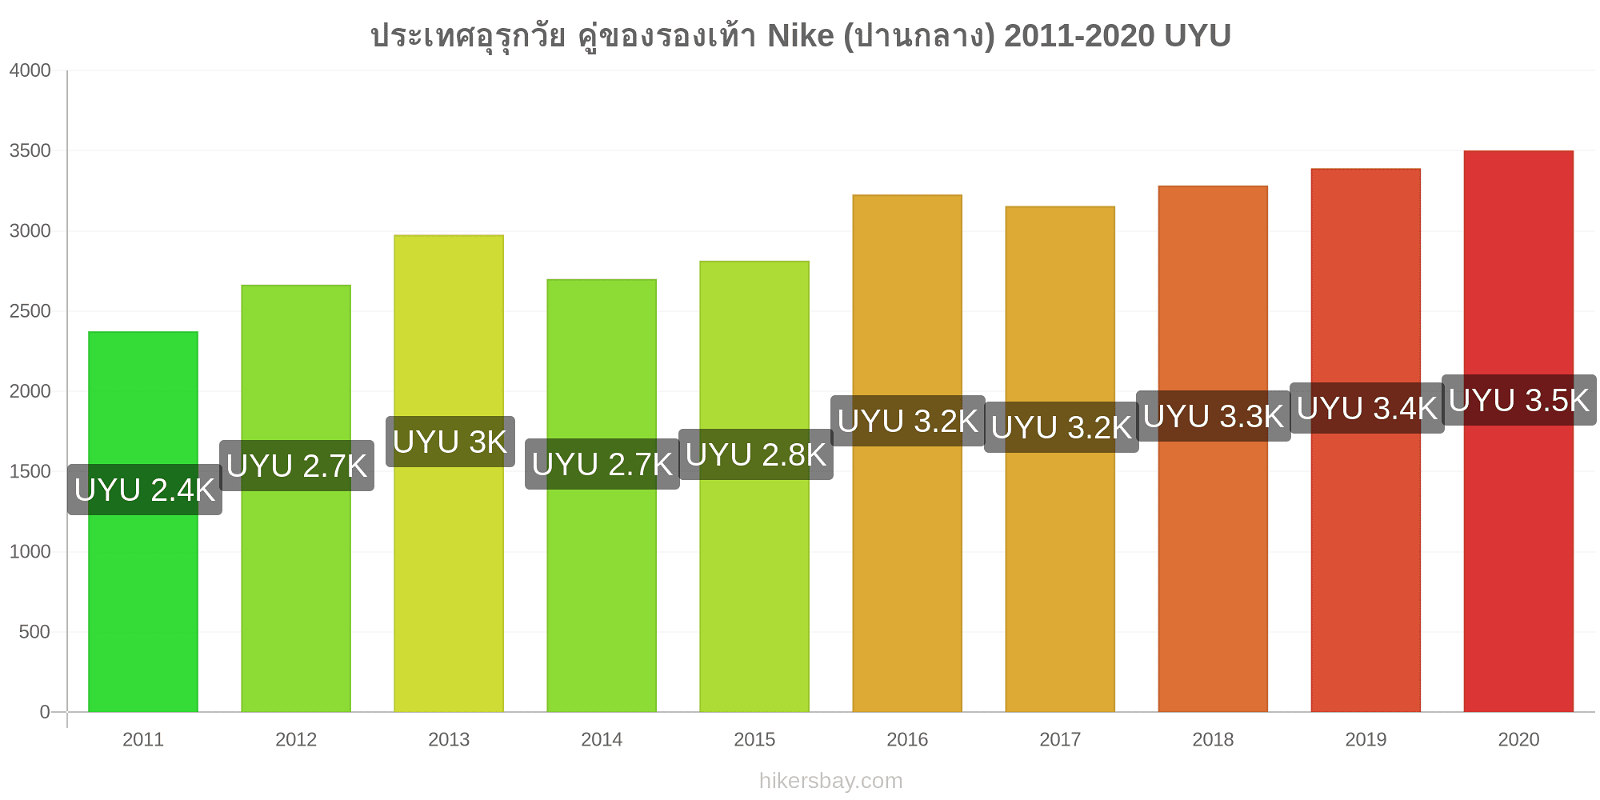 ประเทศอุรุกวัย การเปลี่ยนแปลงราคา คู่ของรองเท้า Nike (ปานกลาง) hikersbay.com